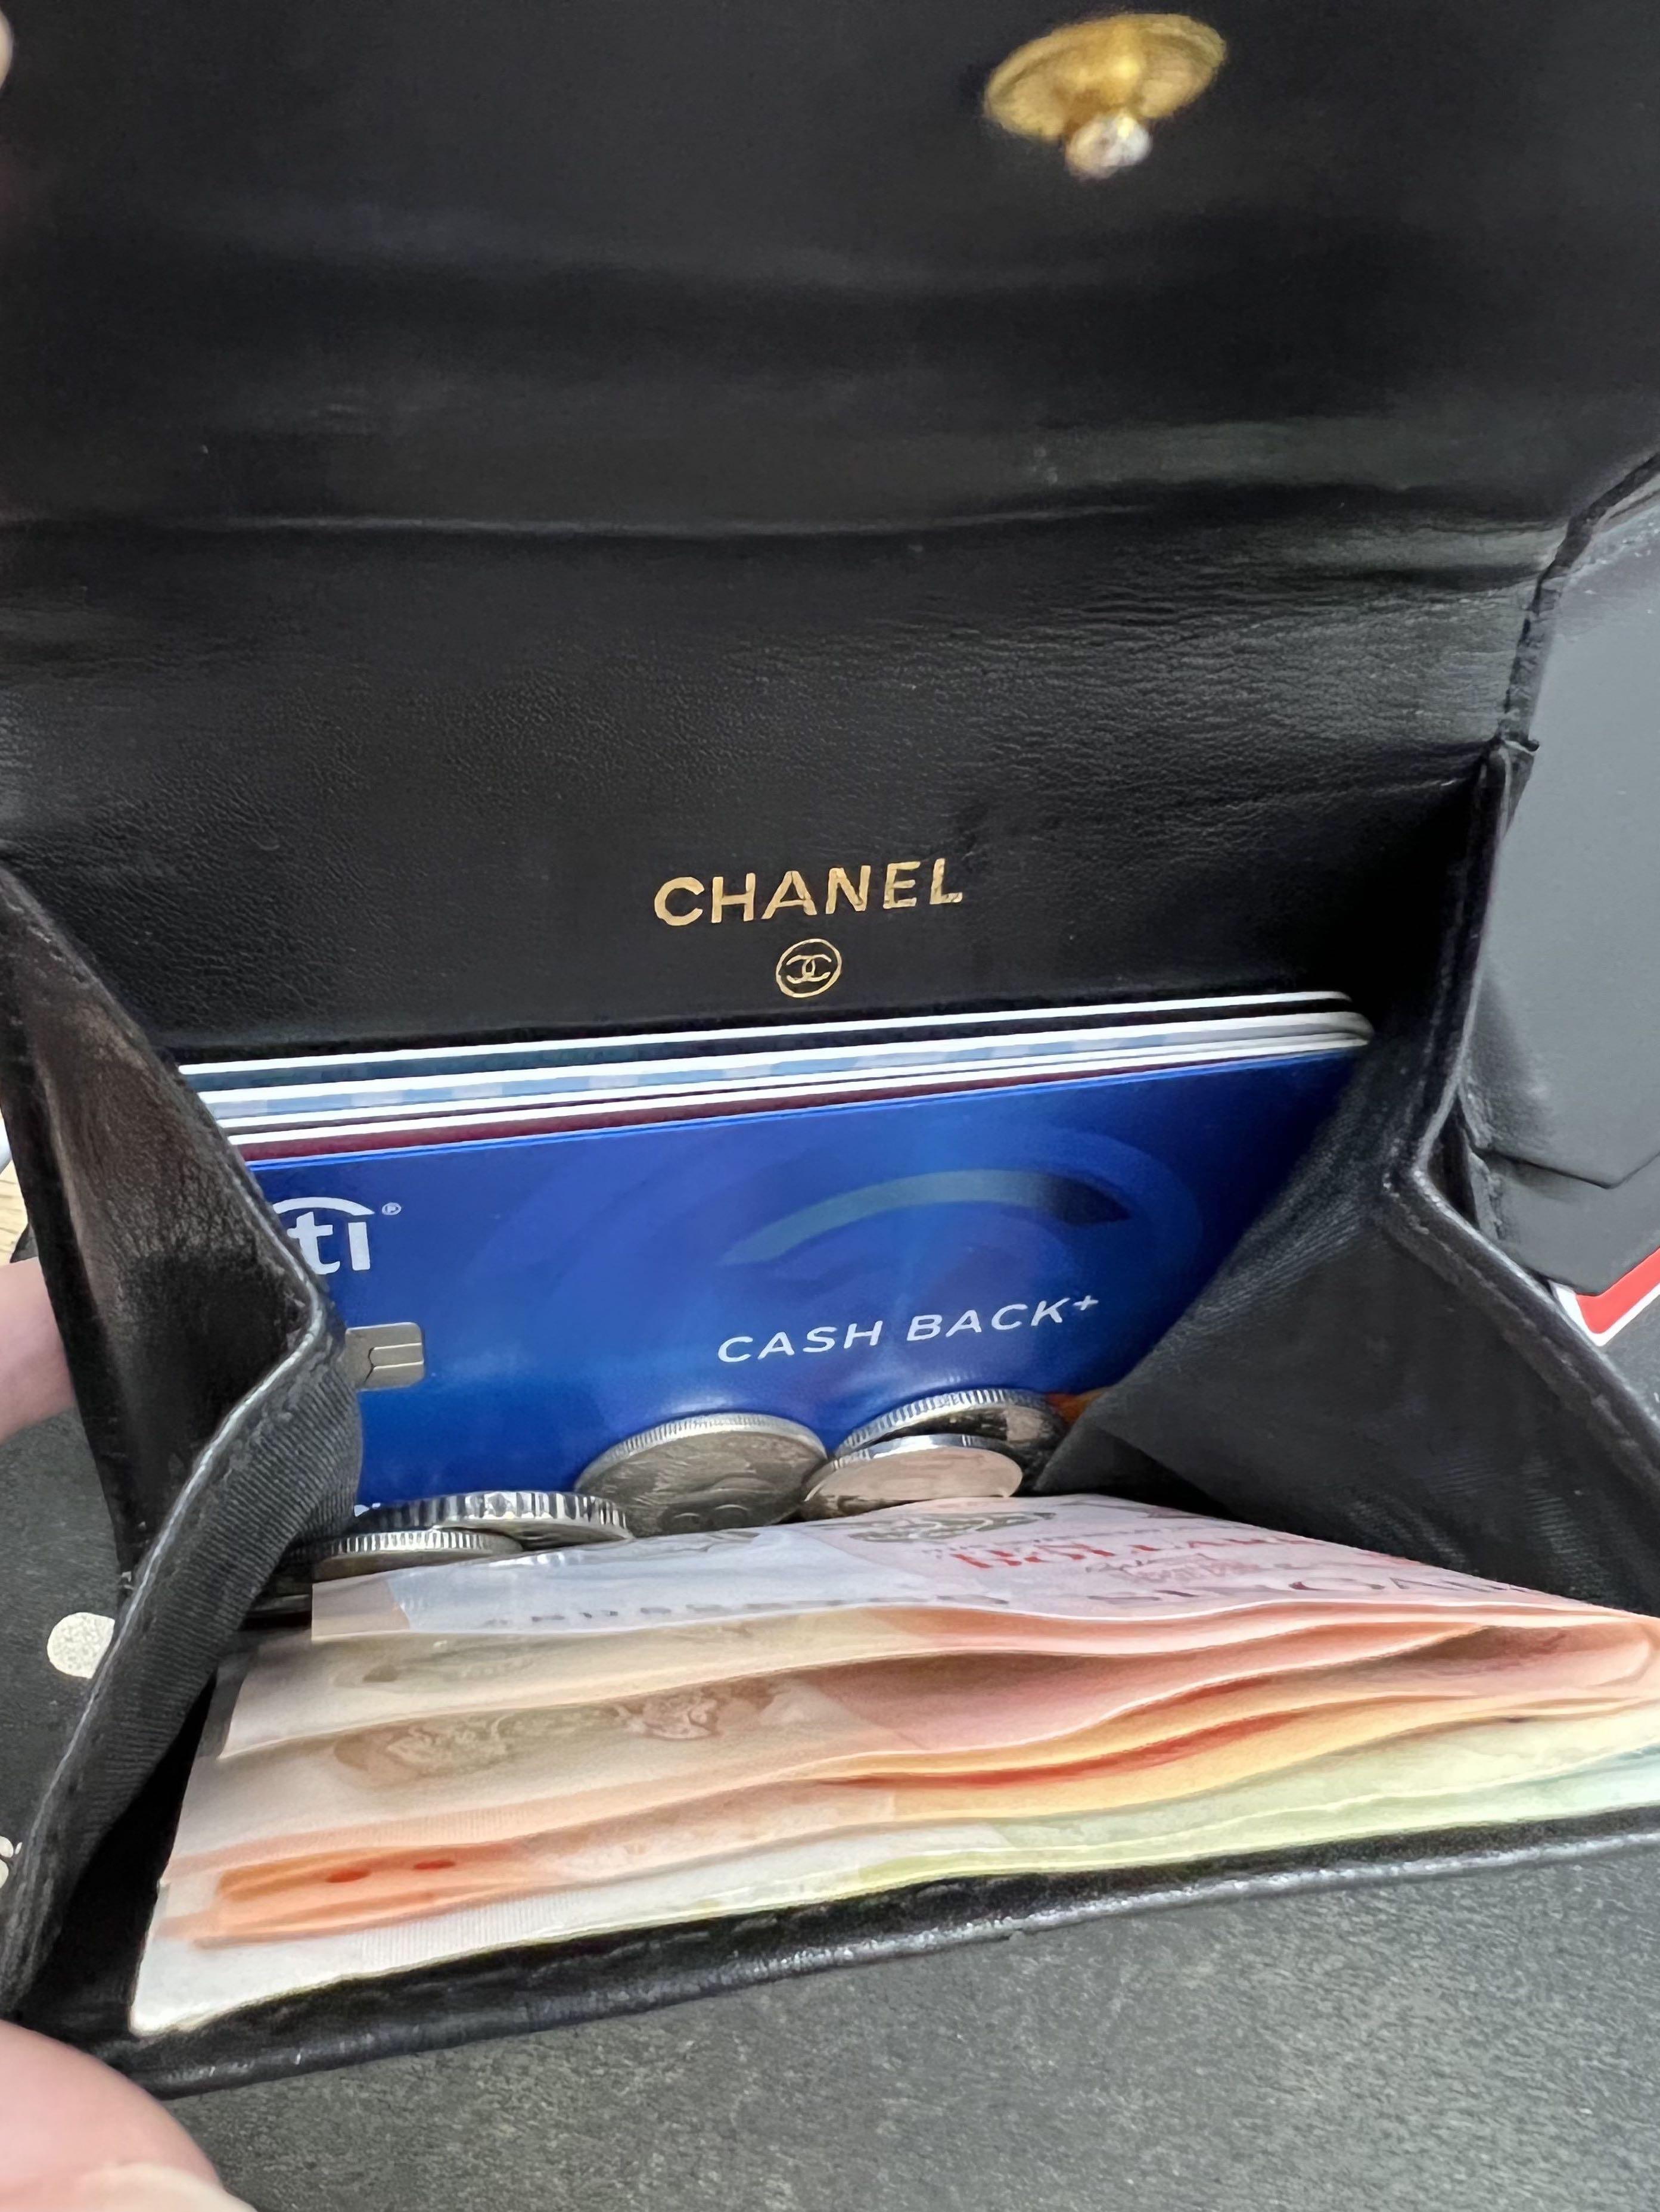 Vintage Chanel Wallets - 92 For Sale on 1stDibs